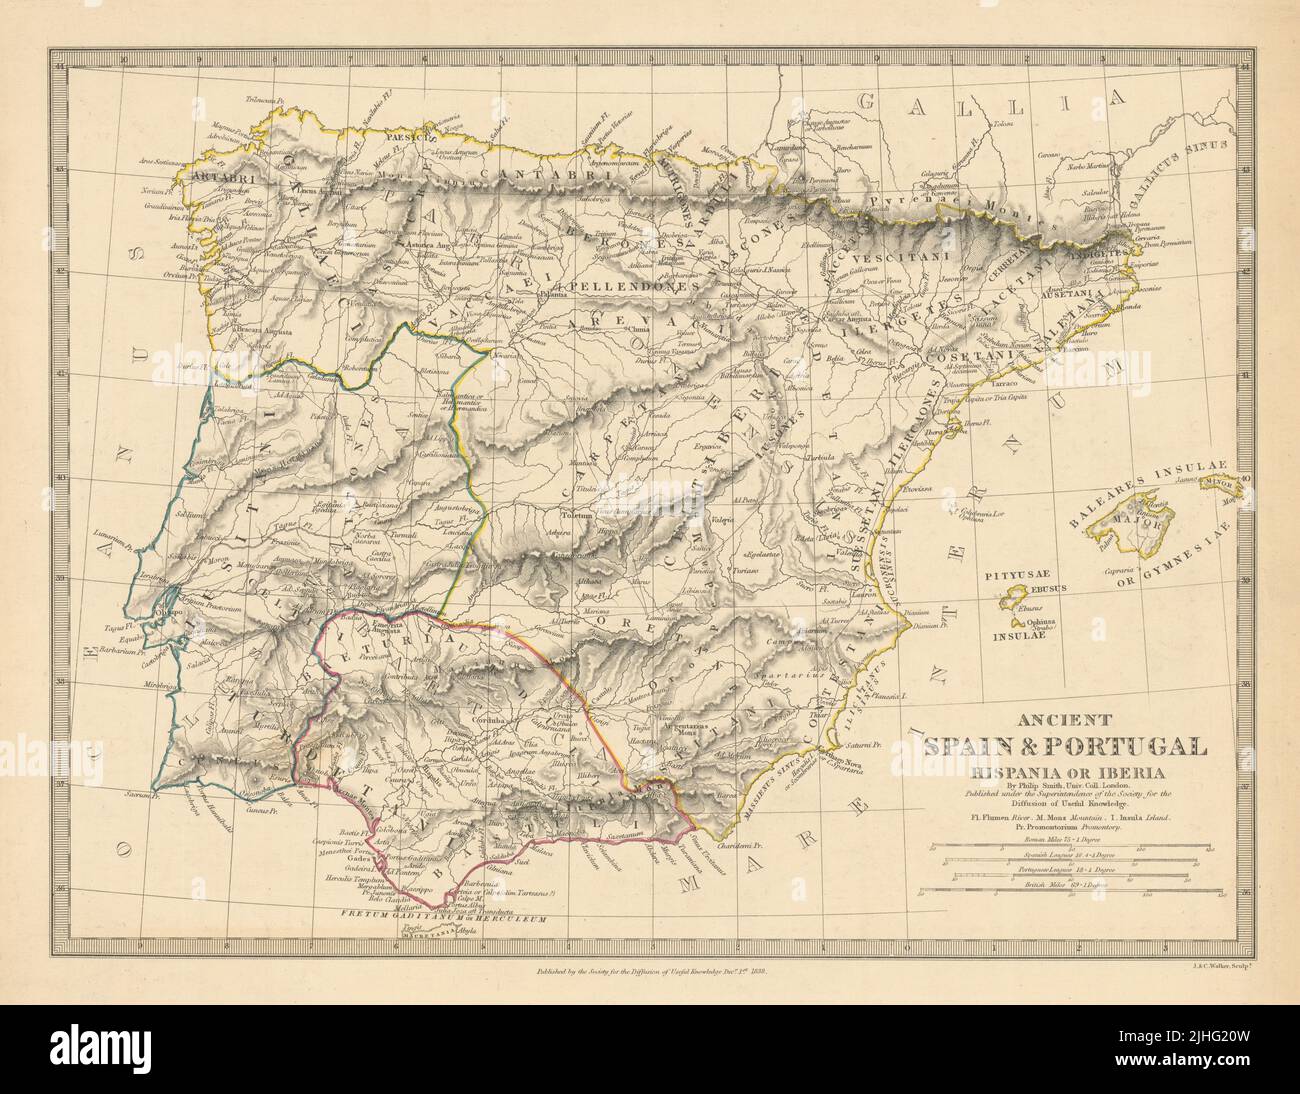 HISPANIA IBERIA. Espagne et Portugal anciens. Noms romains et routes. Carte SDUK 1848 Banque D'Images